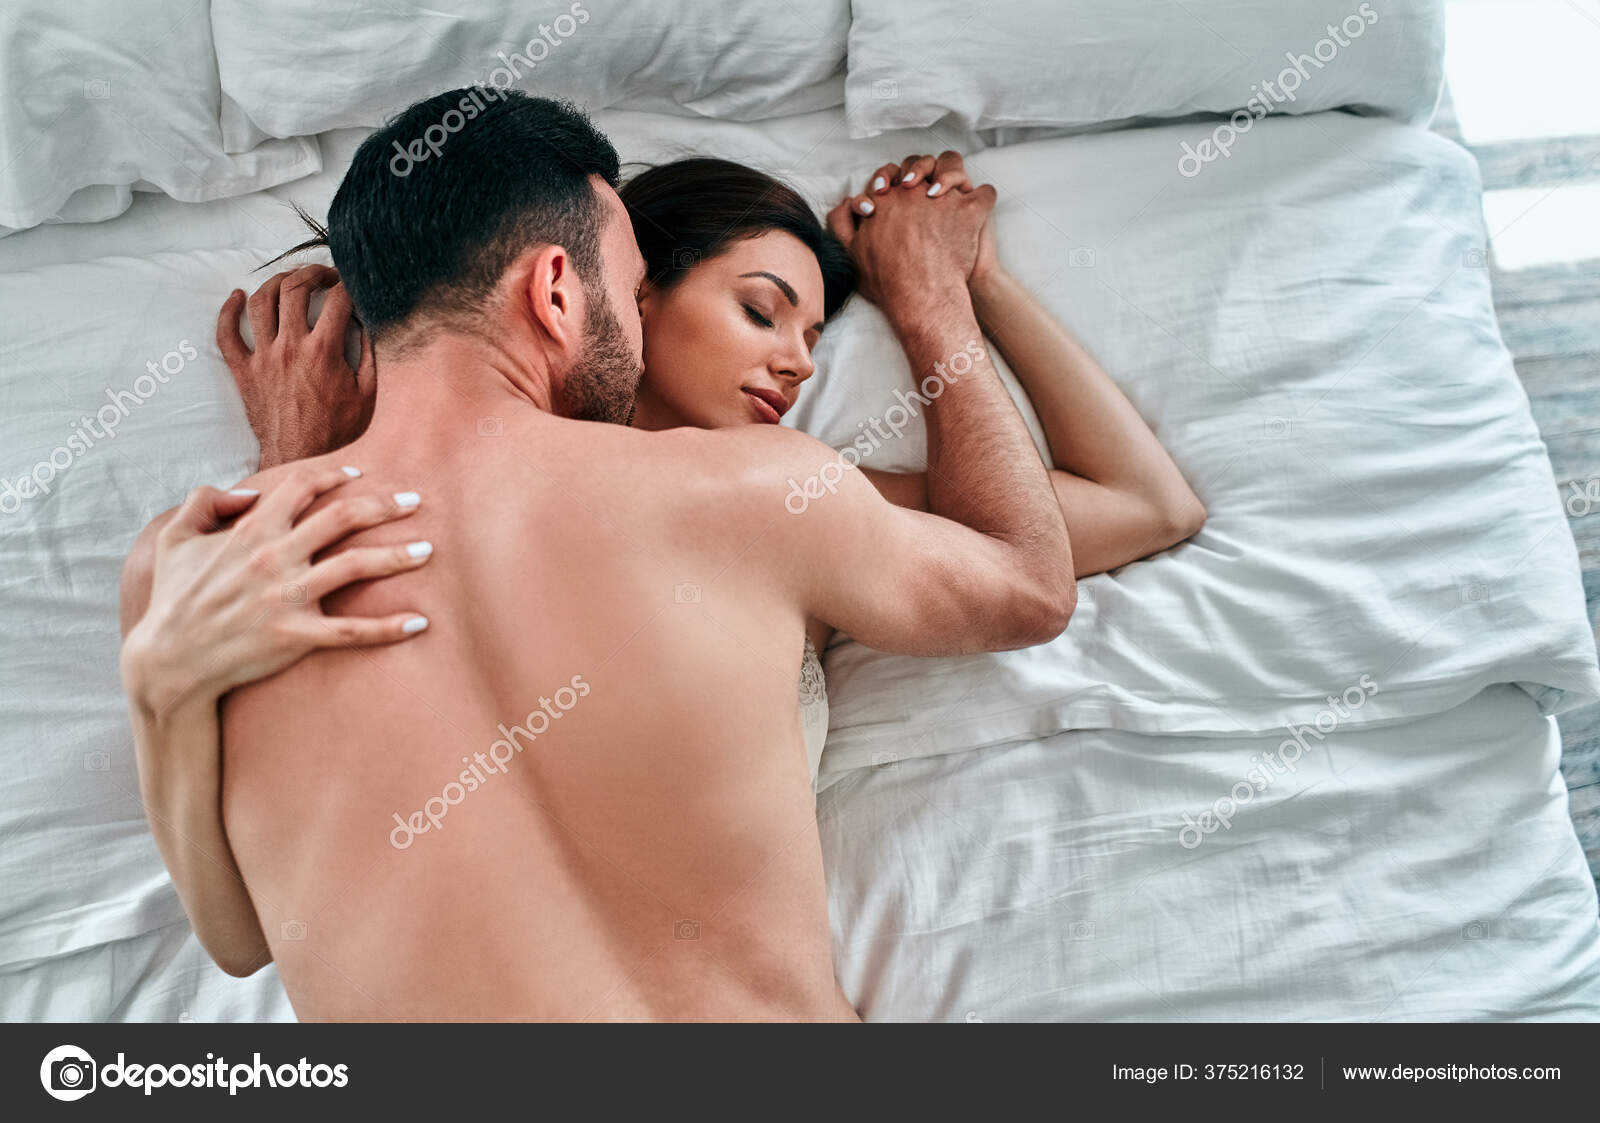 A mulher fazendo sexo com homem